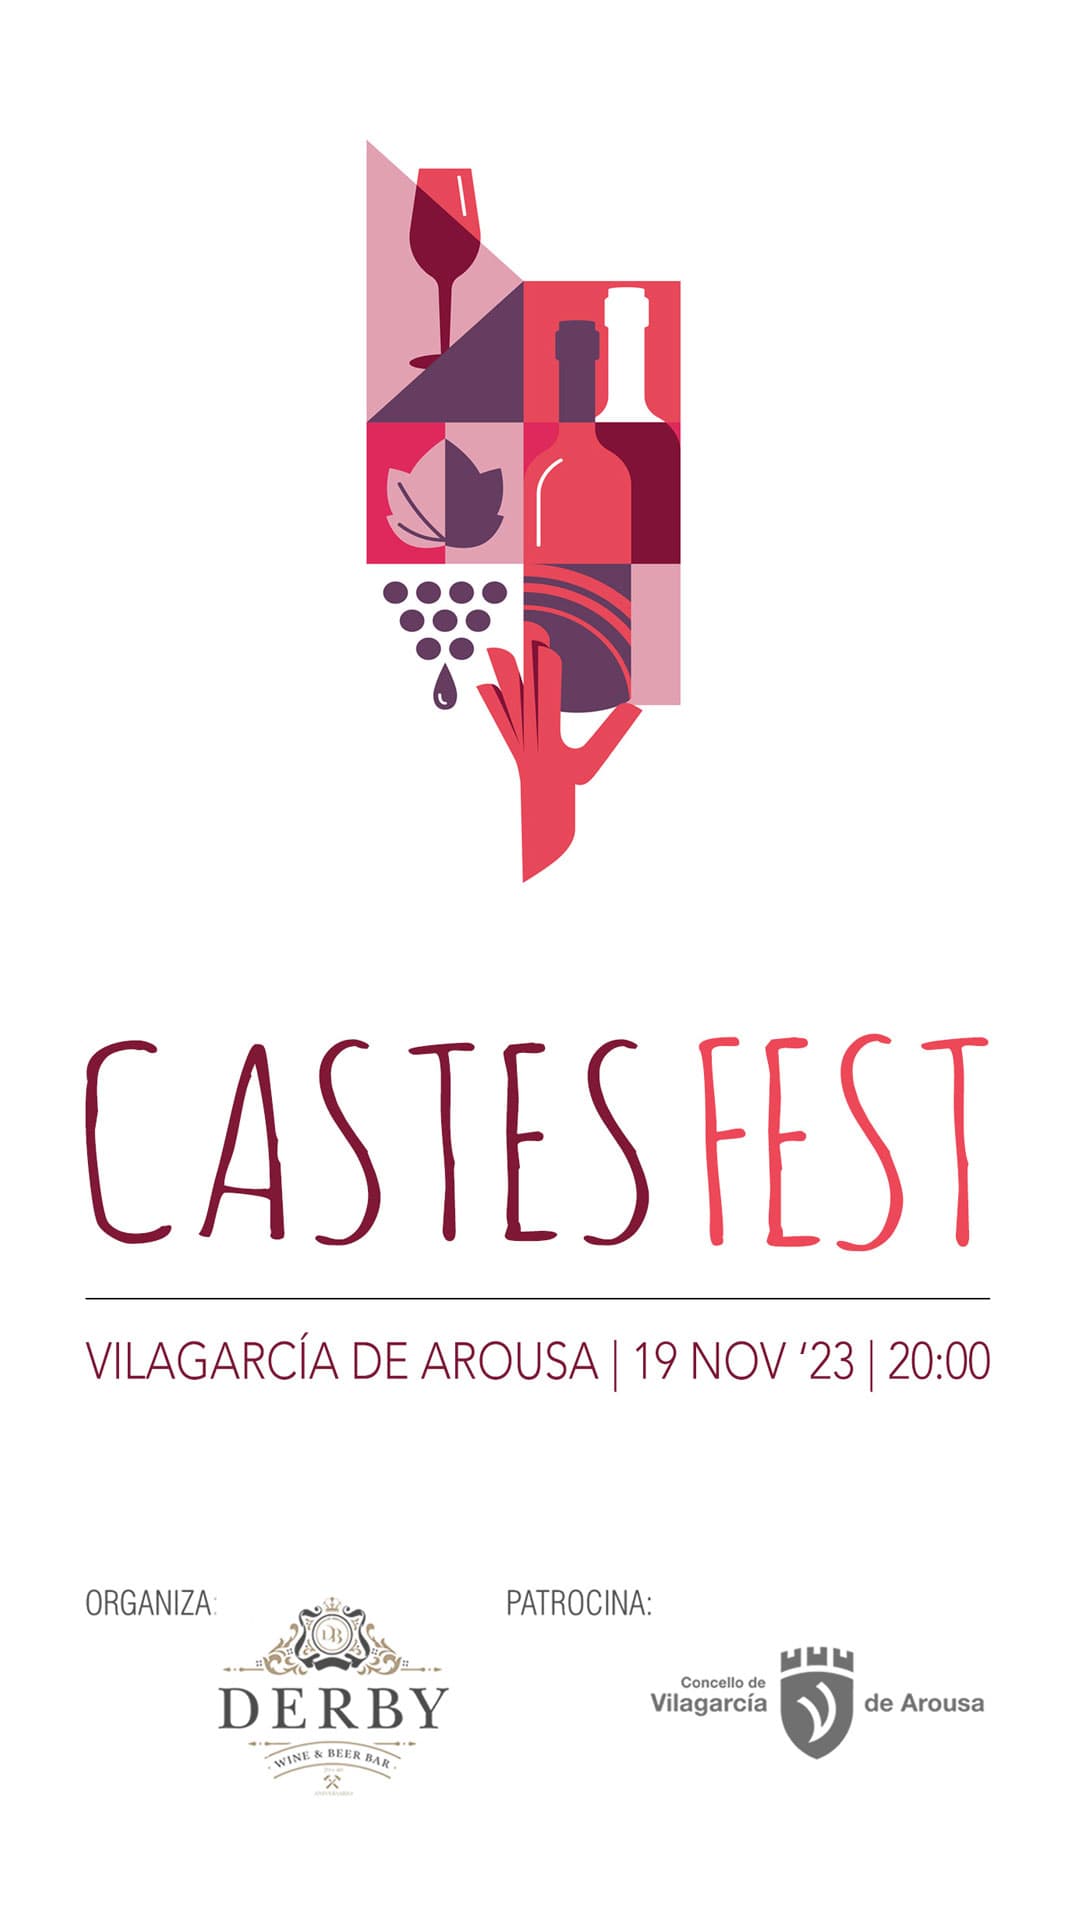 Castes Fest